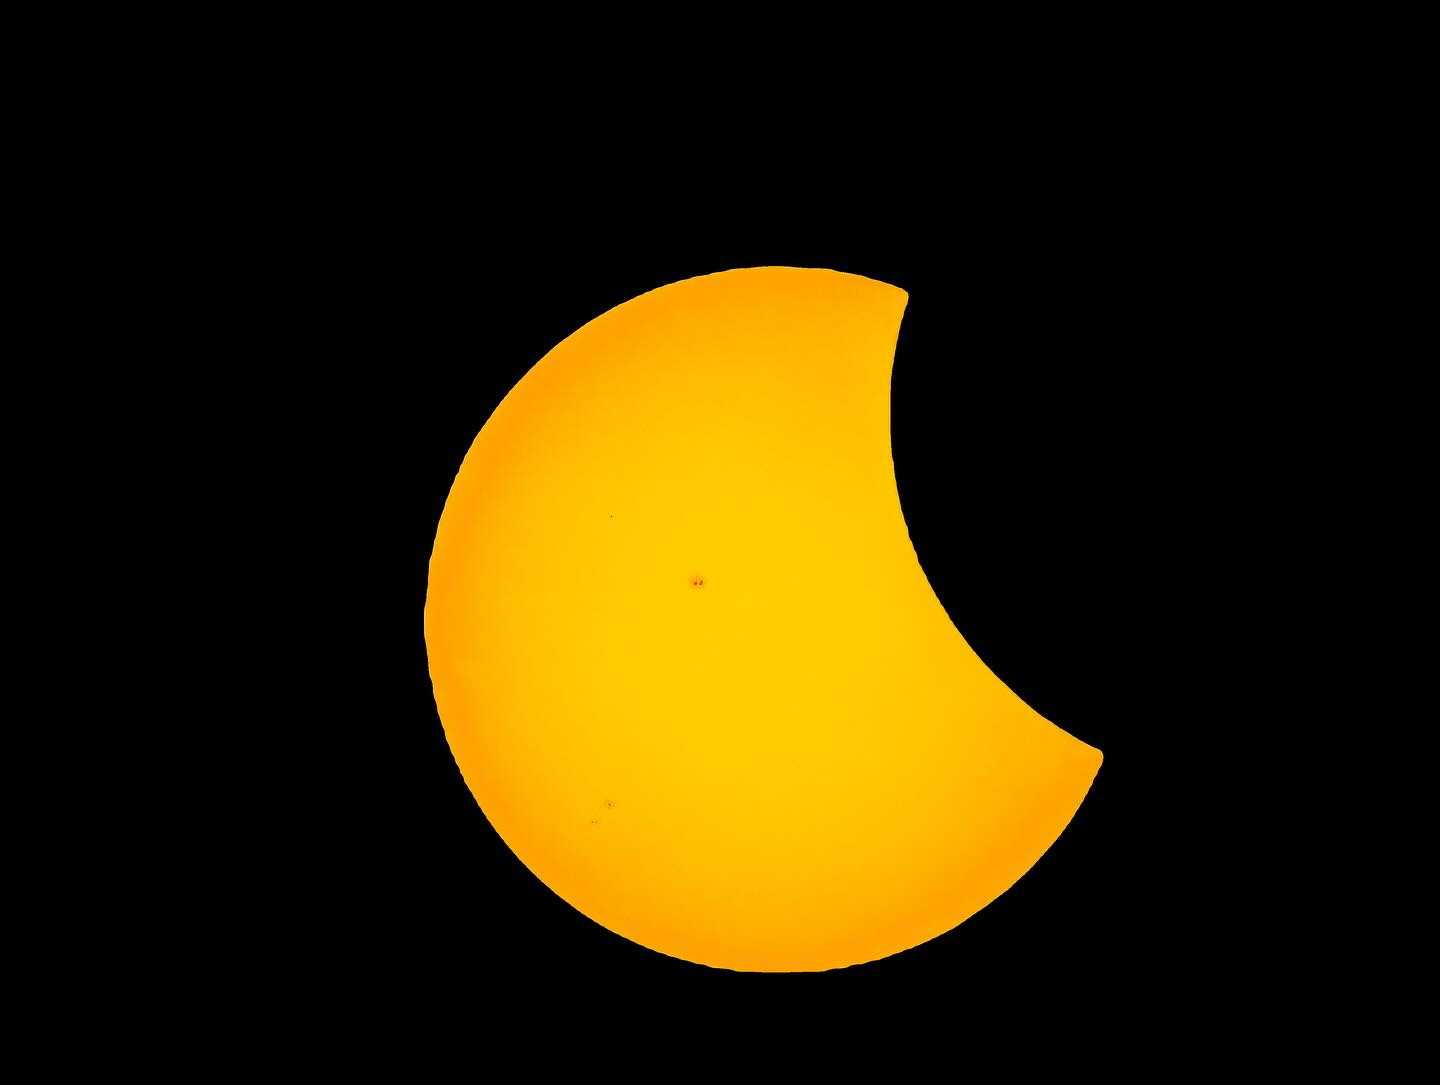 Eclipse parcial, Guadalupe Bogantes